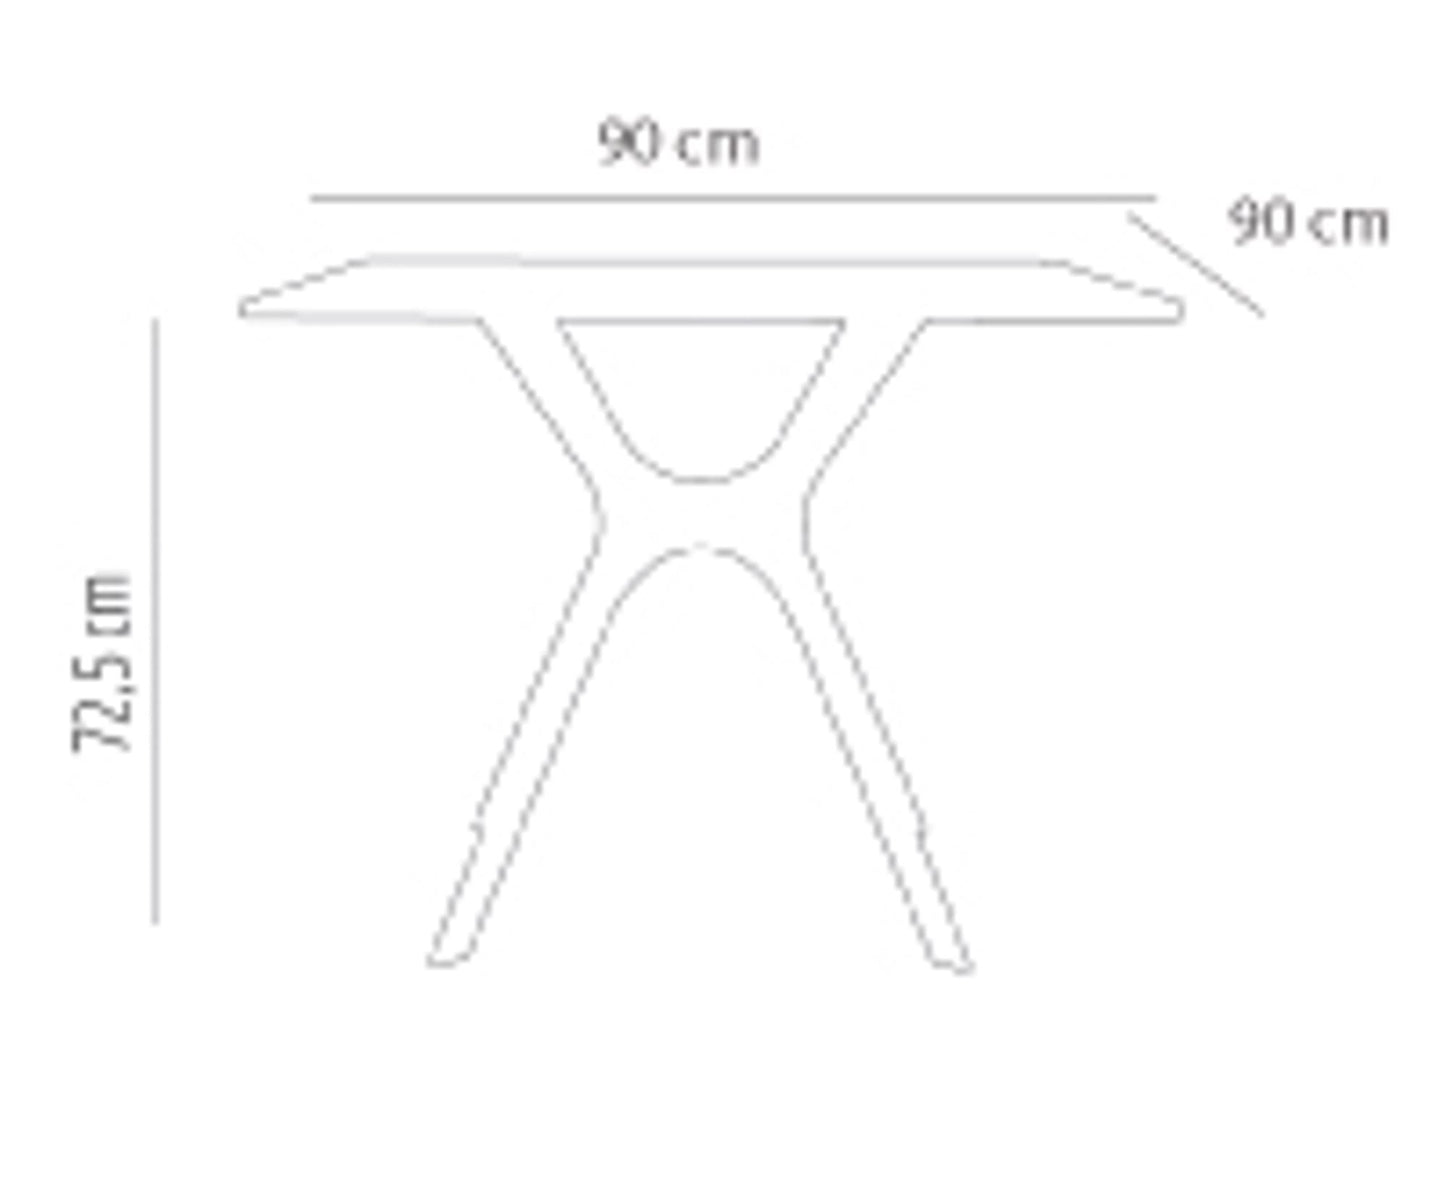 Resol vela s mesa cuadrada interior, exterior 90x90 pie blanco - tablero blanco